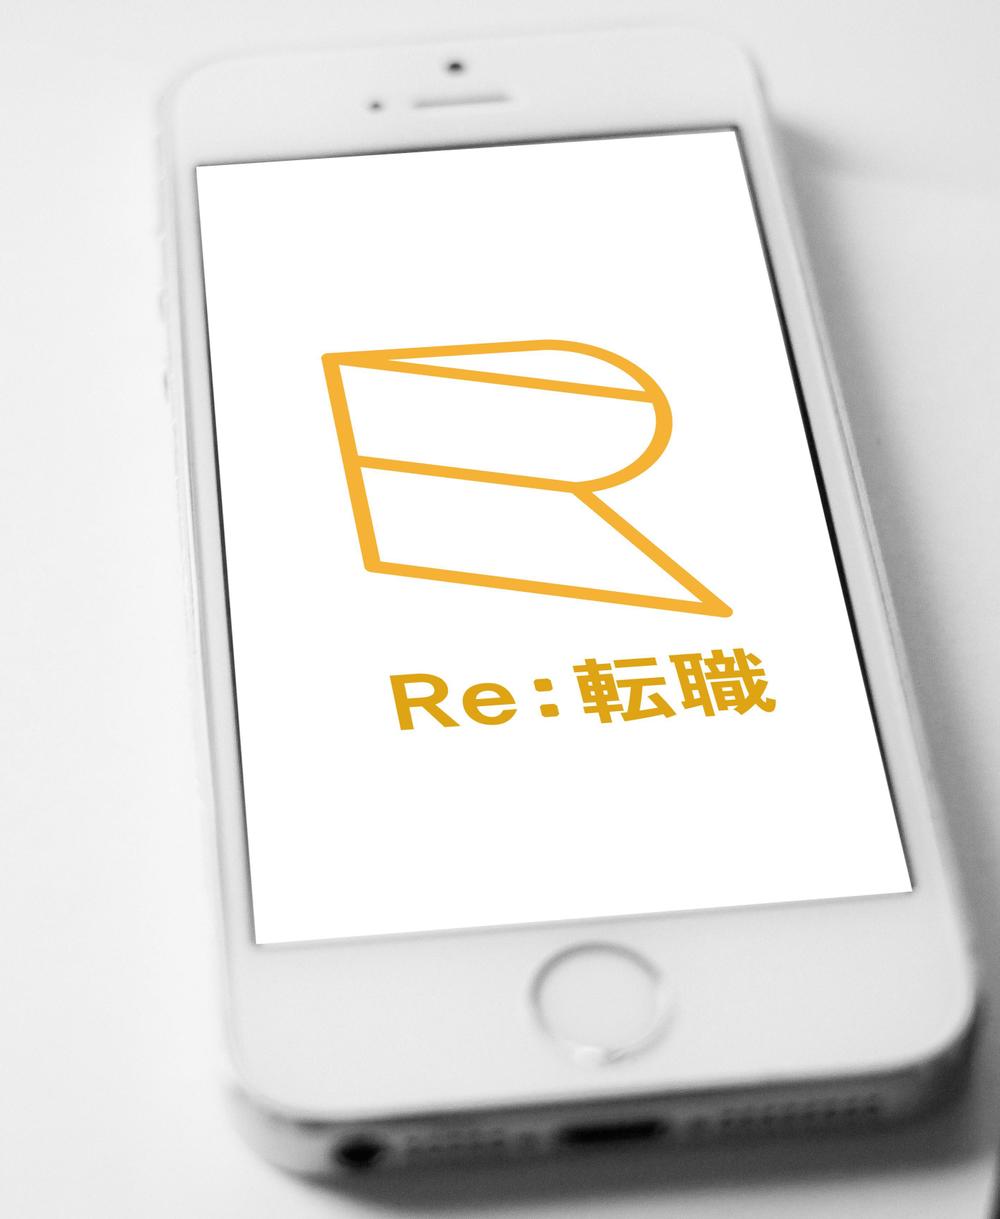 RE（リサイクル・リユース・リフォーム）ビジネス特化の転職サイト、「Re:転職」のロゴ